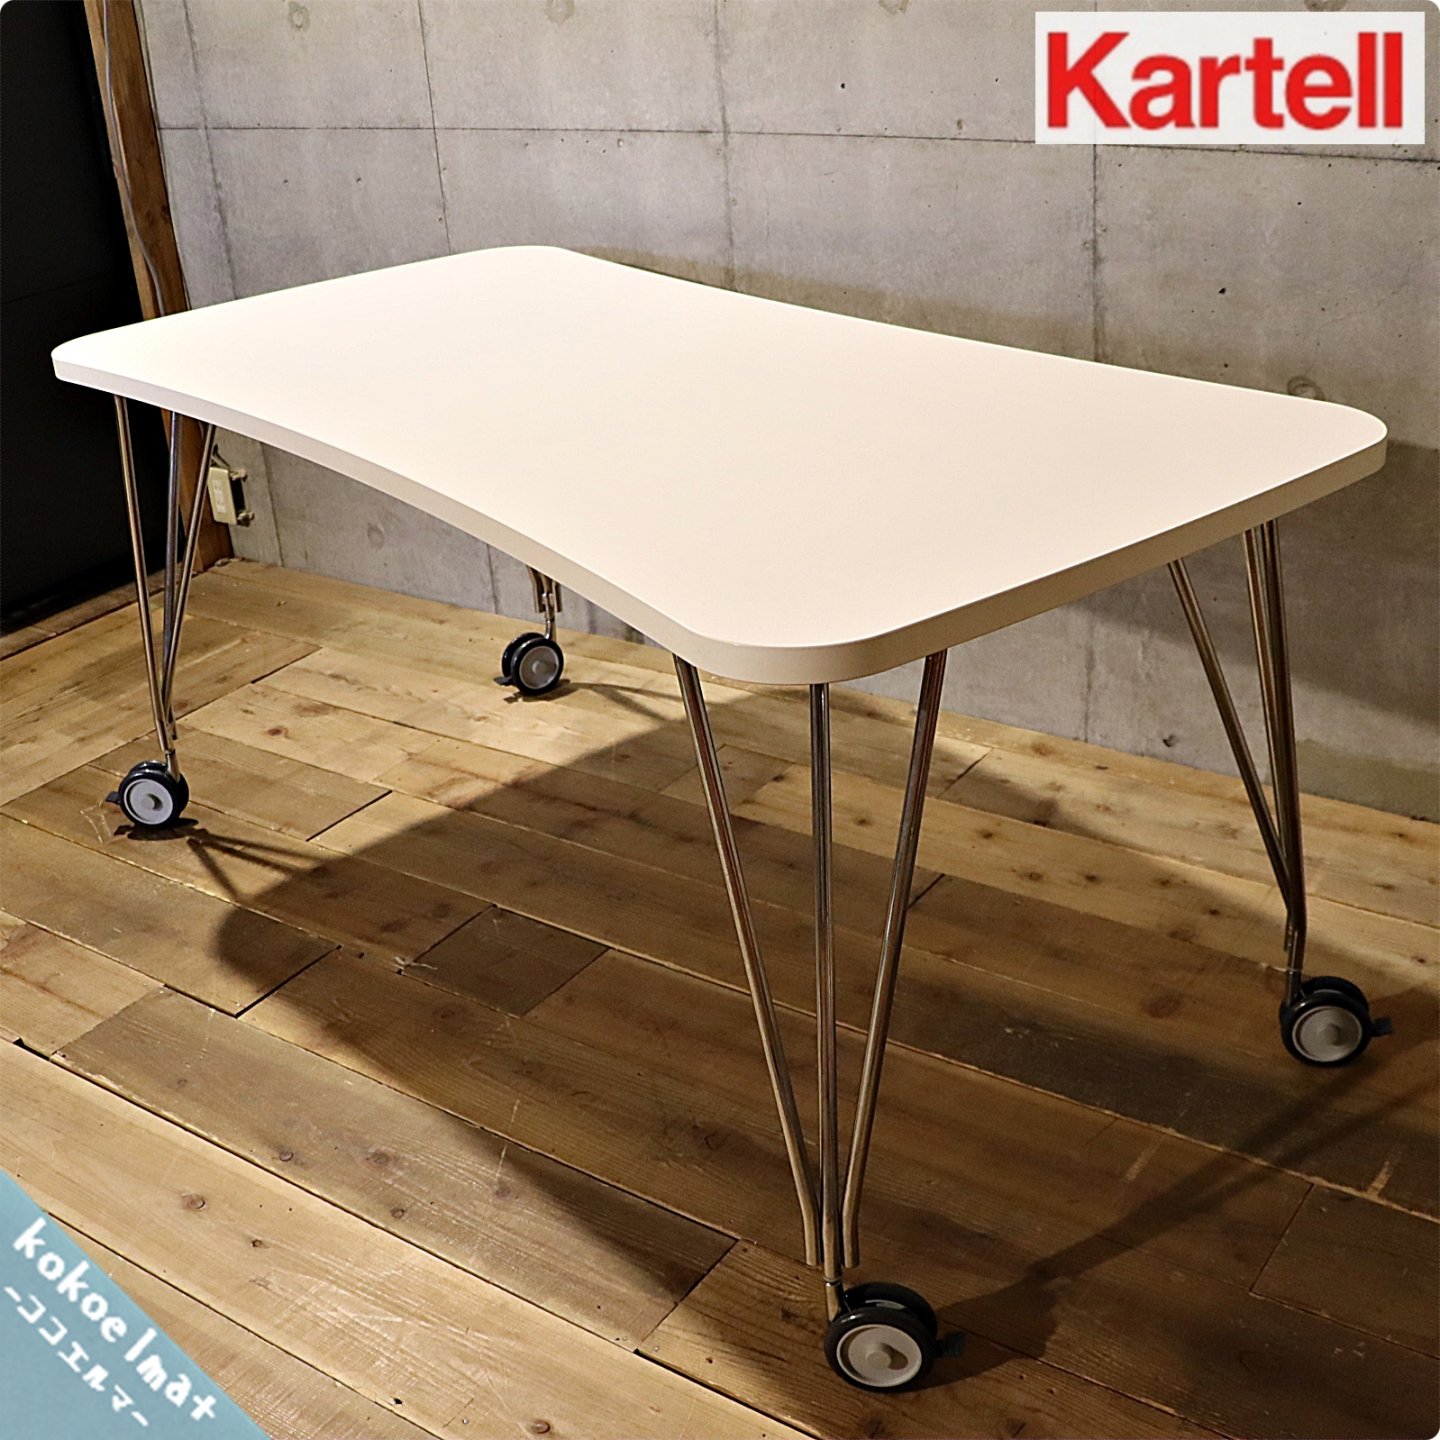 イタリアのデザイナーズ家具ブランドKARTELL(カルテル)のMAXTABLE